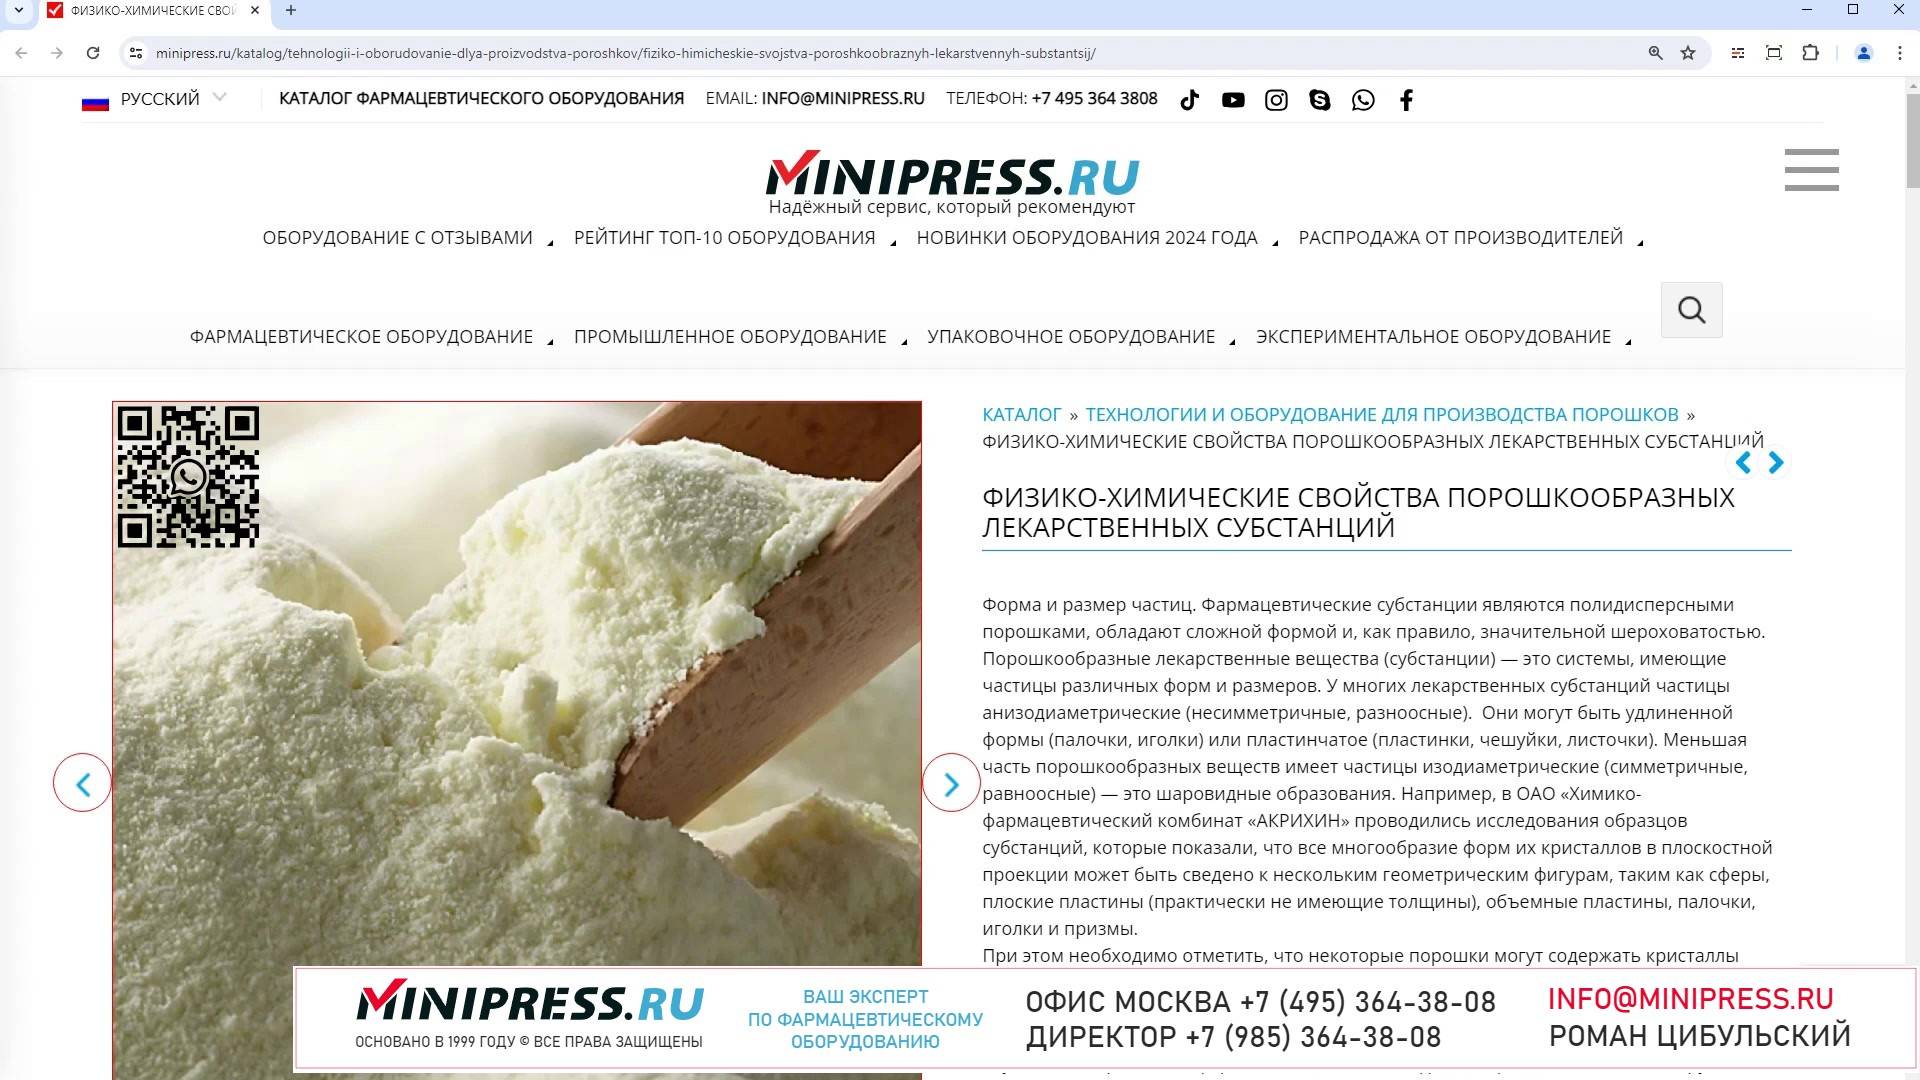 Minipress.ru Физико-химические свойства порошкообразных лекарственных субстанций